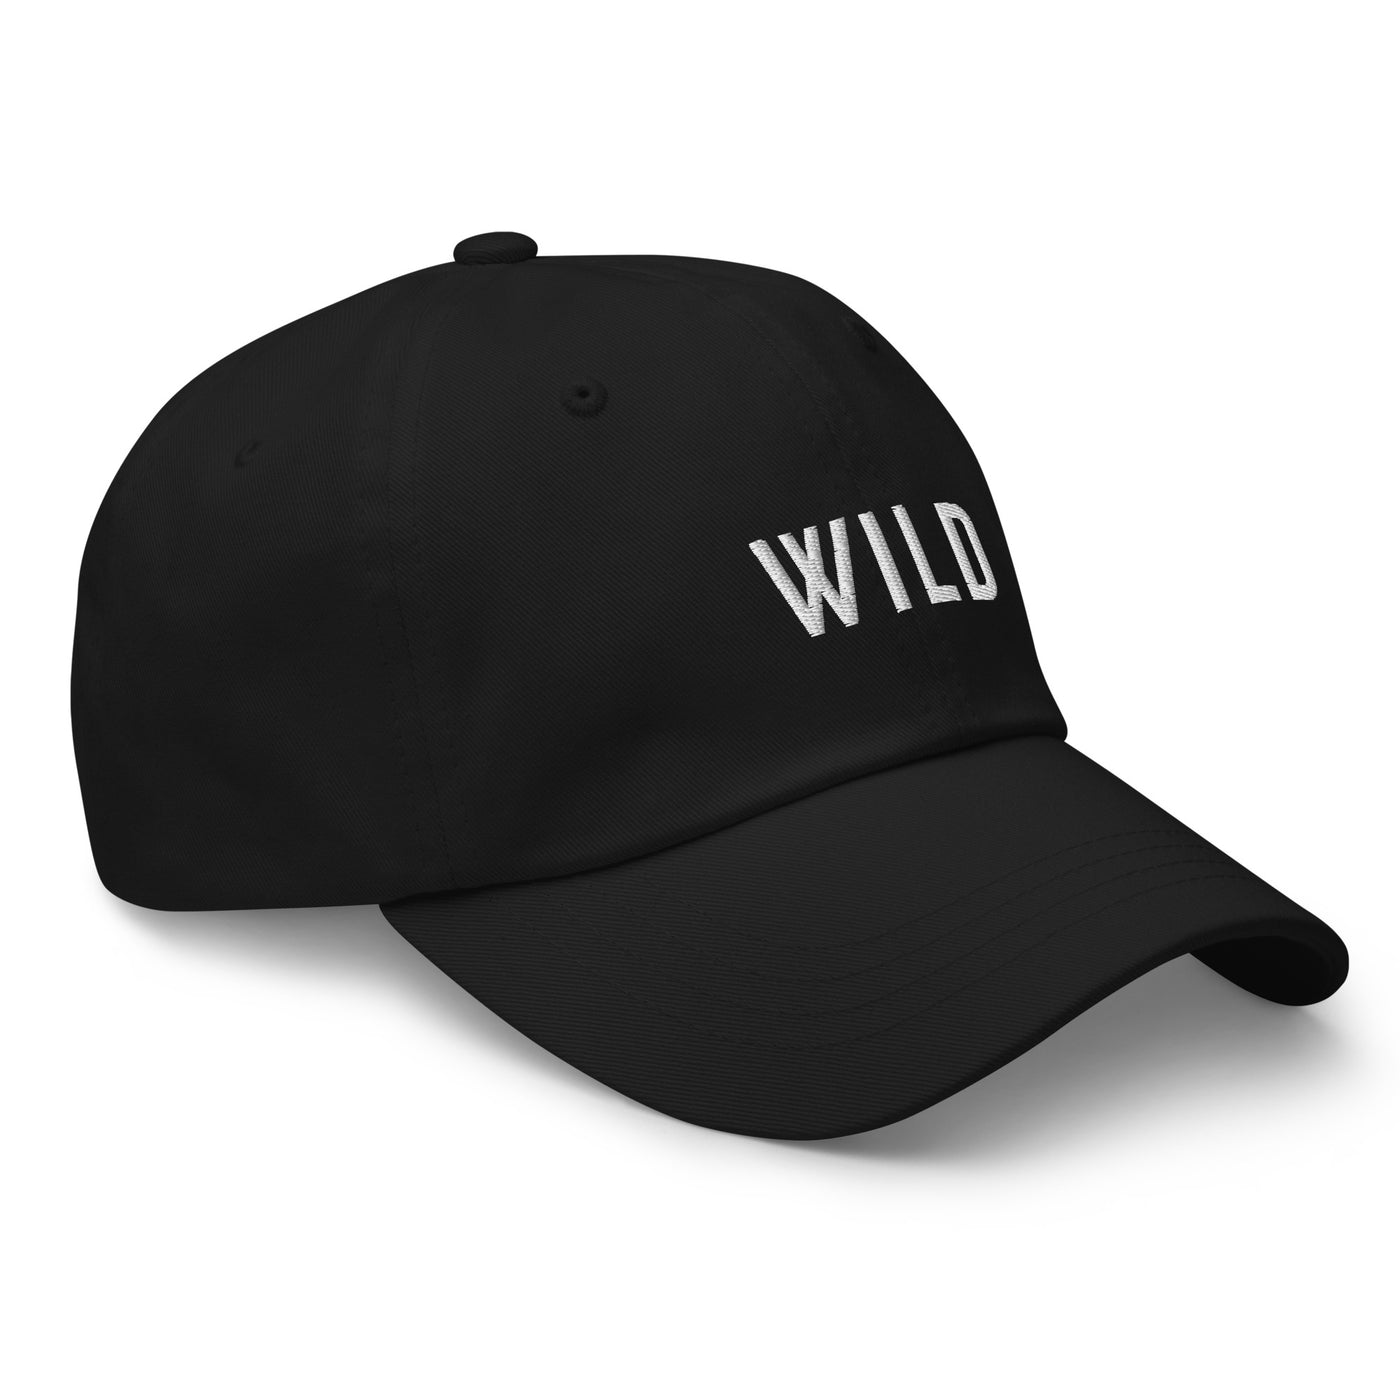 Wild Unisex Hat